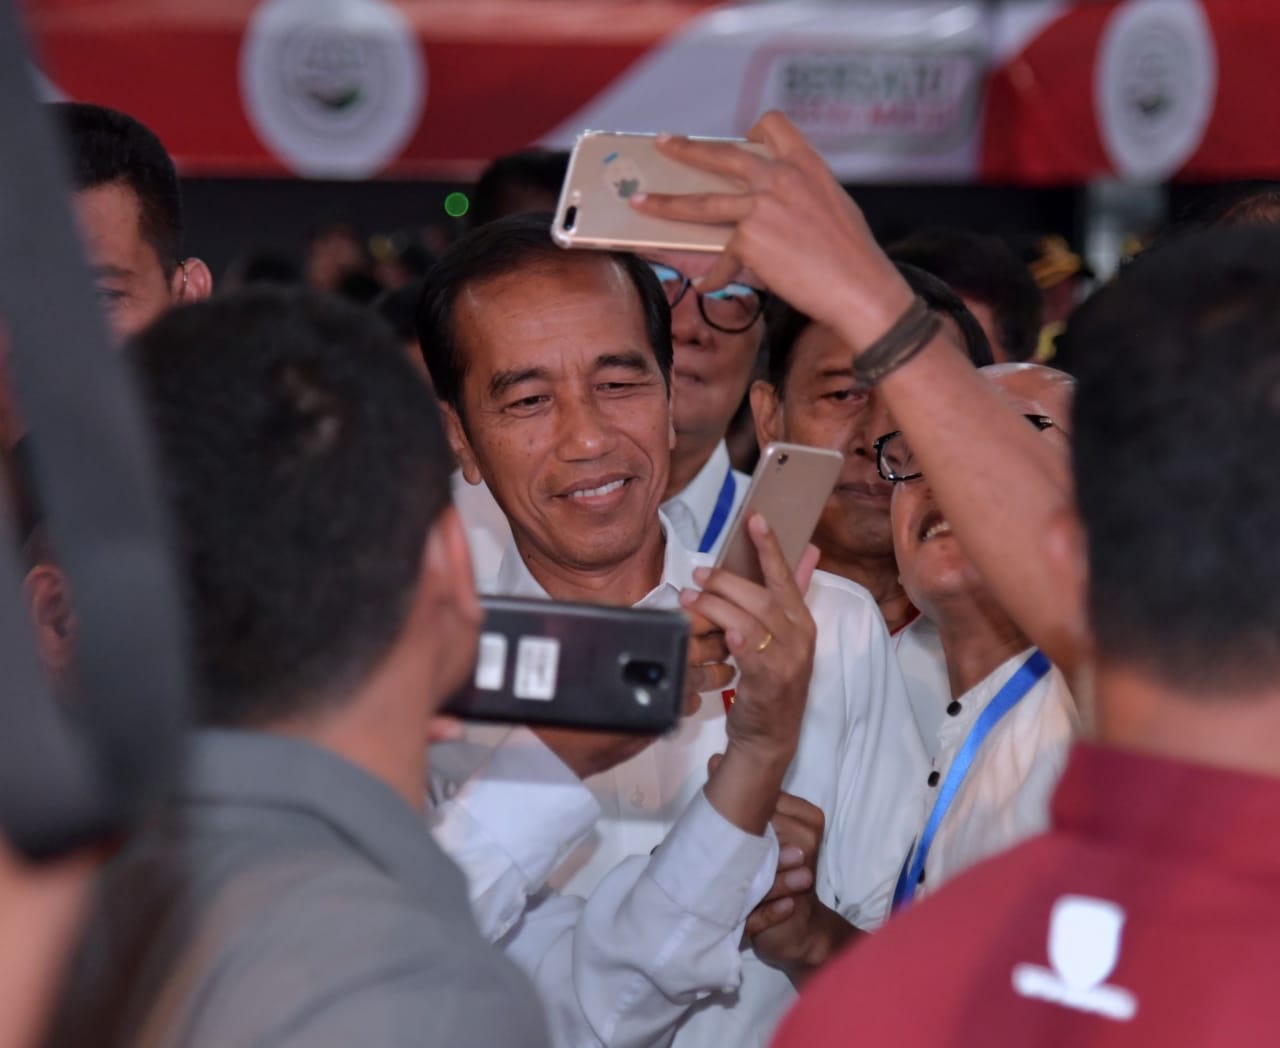 Presiden Jokowi Sampaikan Keprihatinannya atas Kasus Perundungan di Pontianak